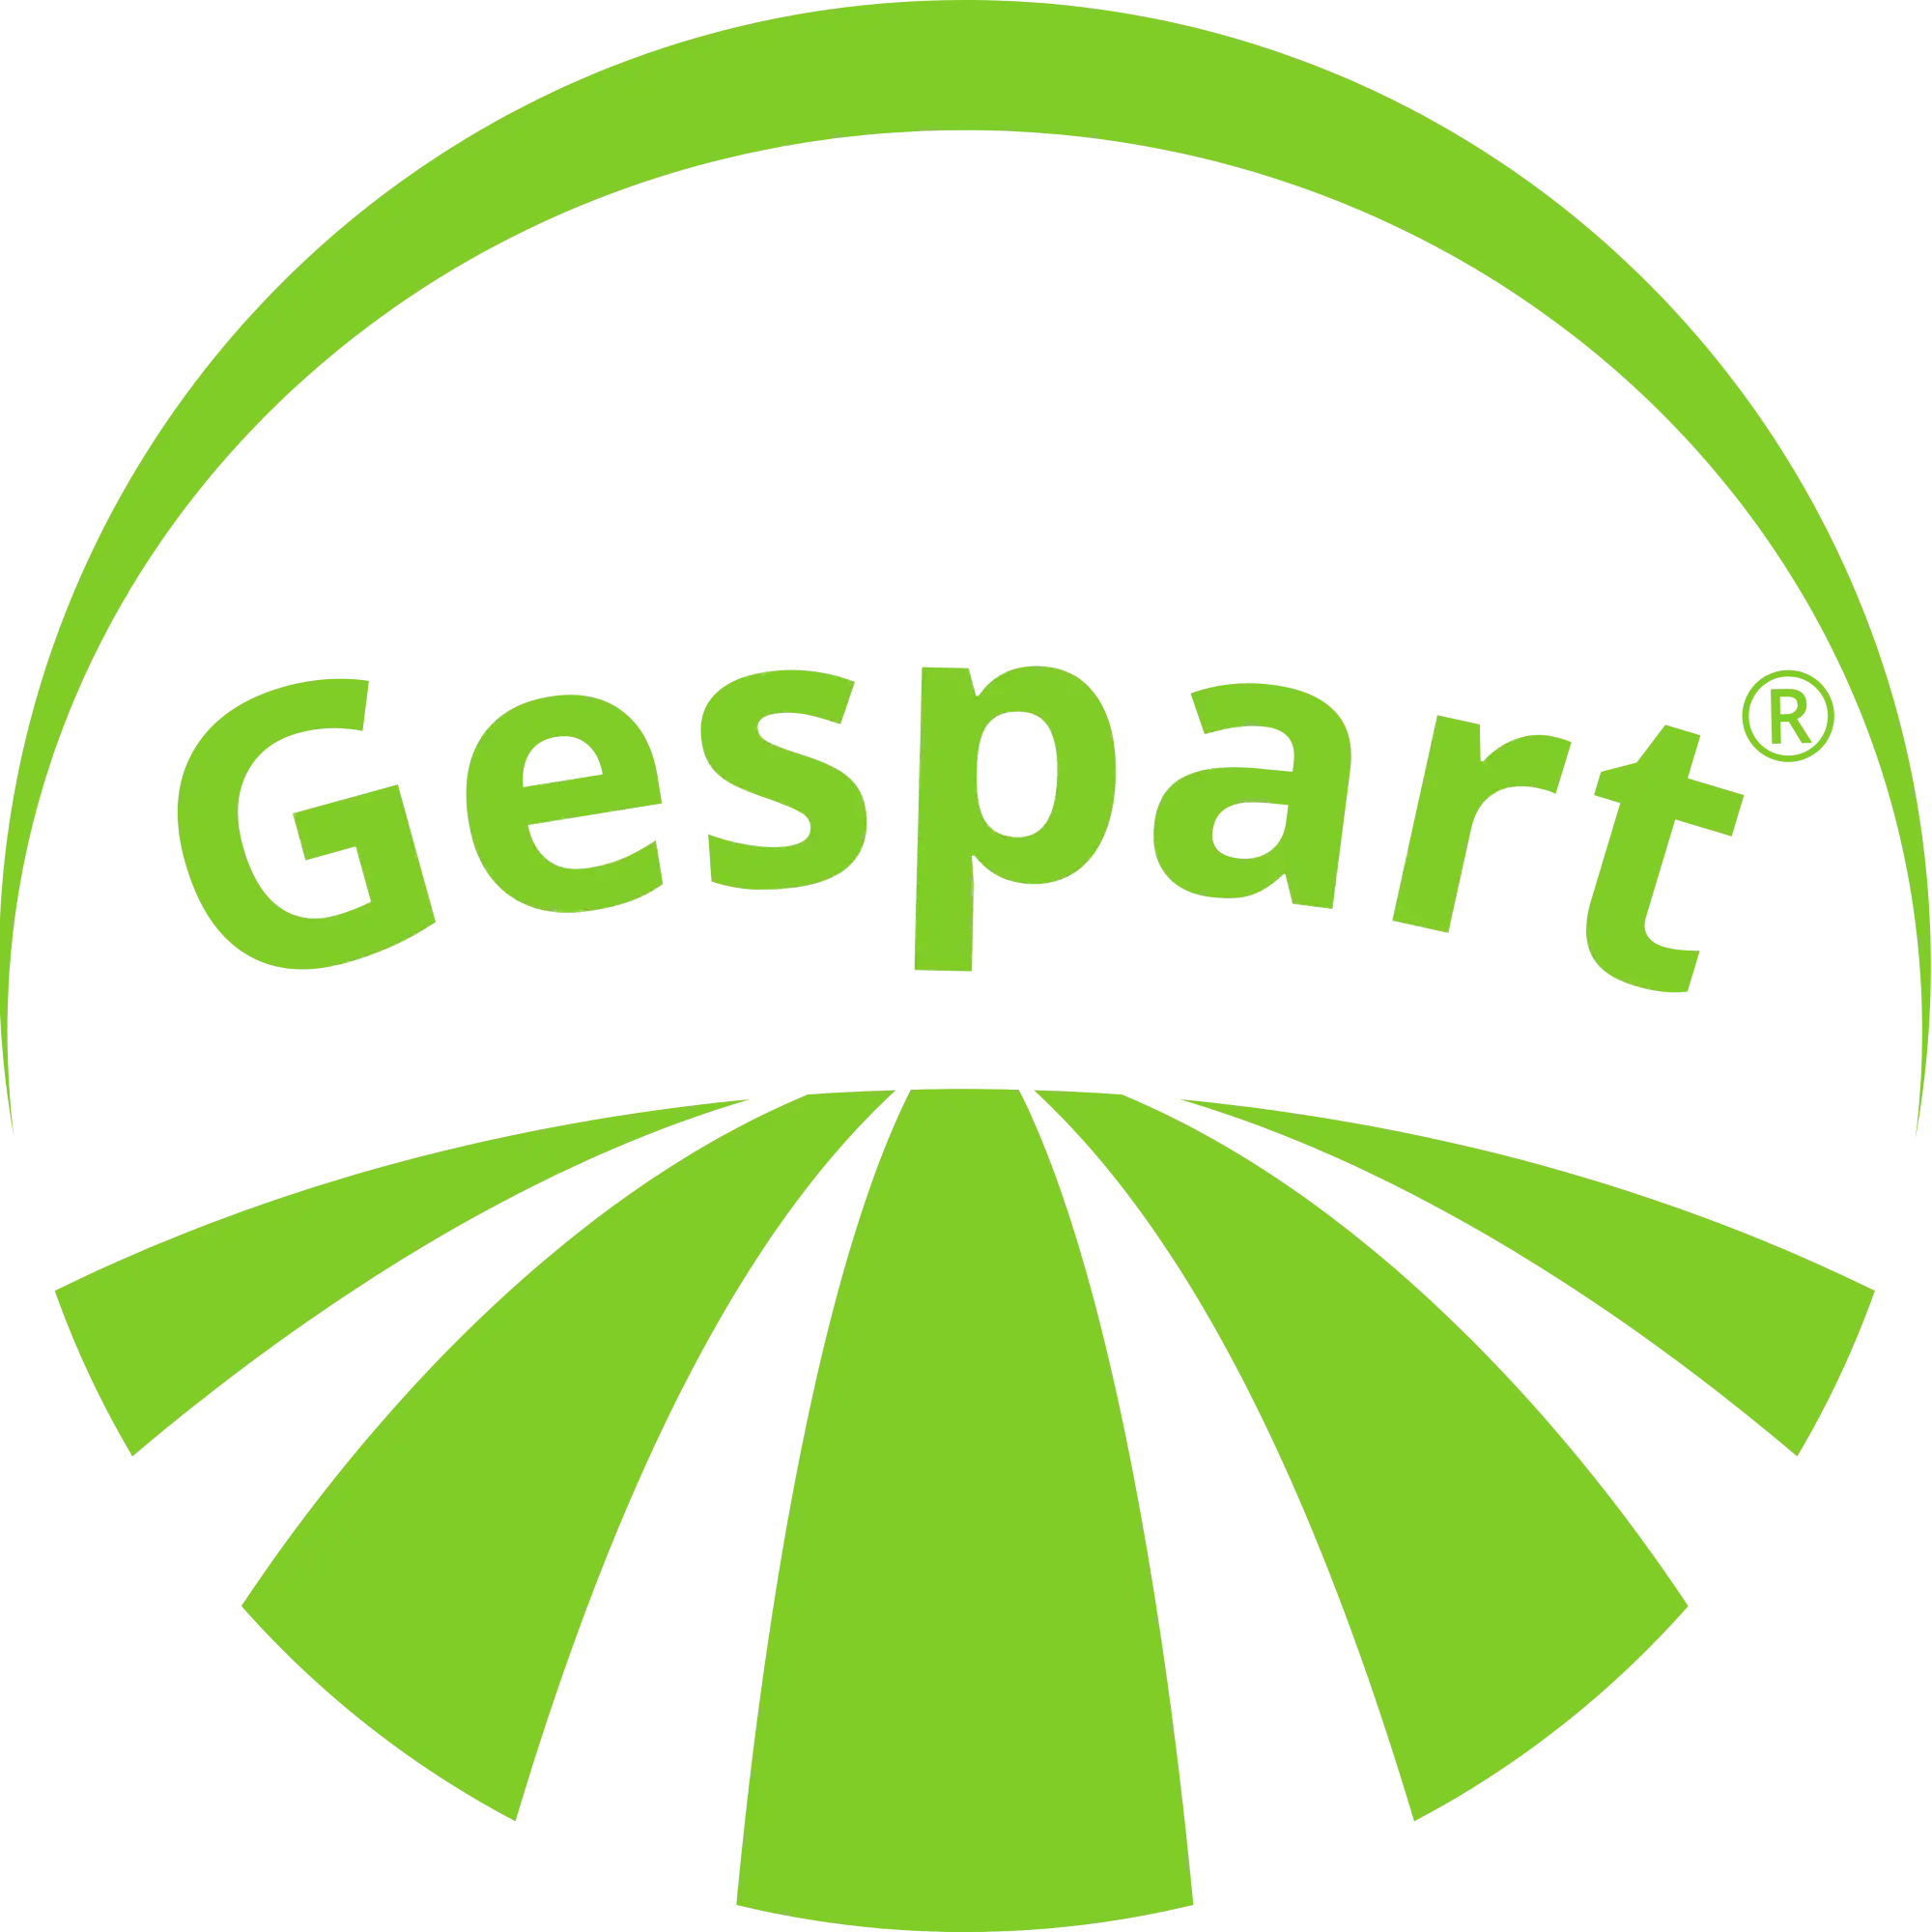 Gespart